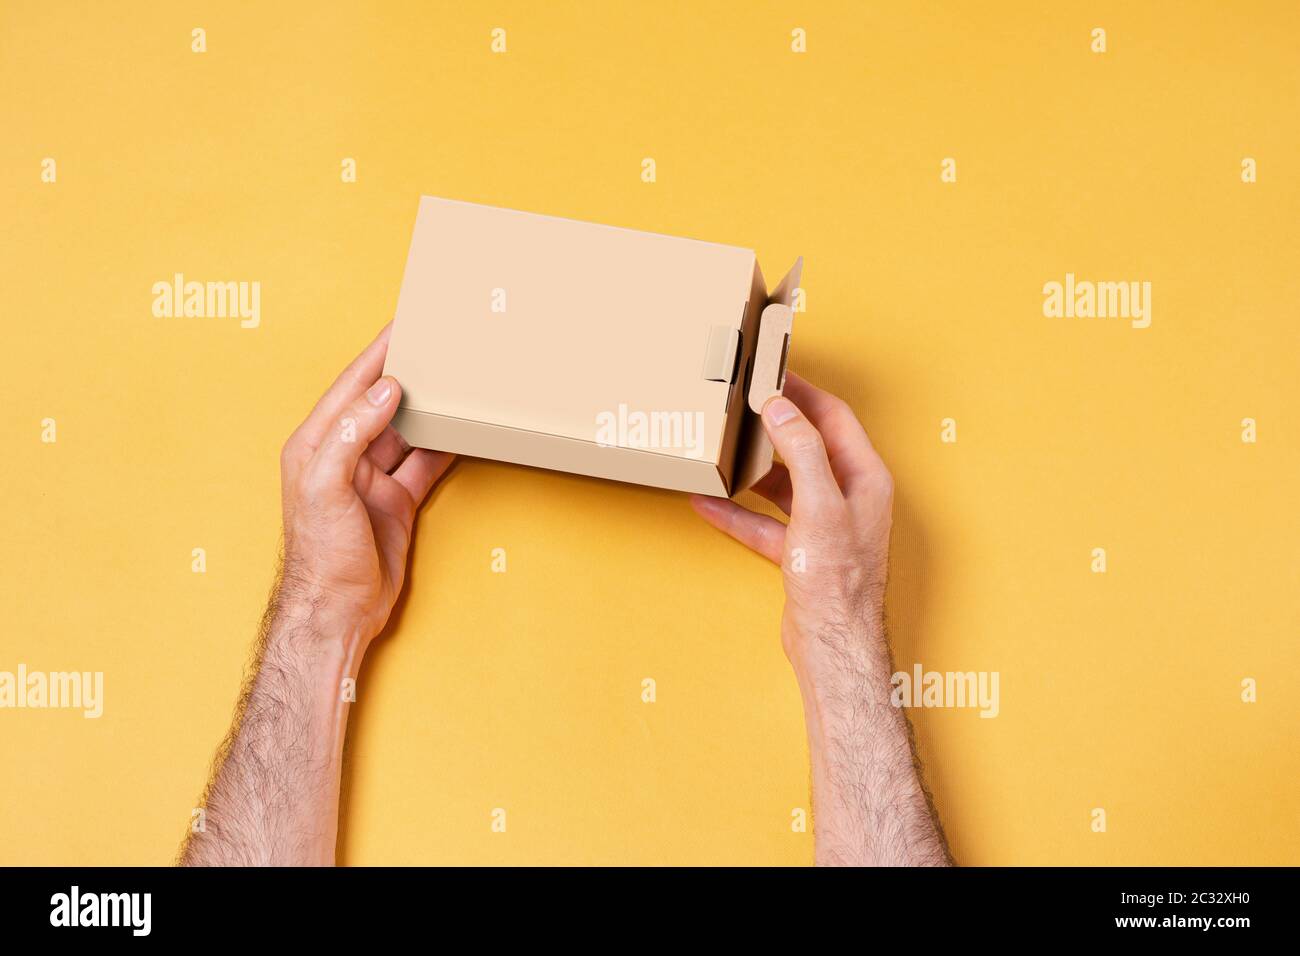 Männliche Hand hält eine kleine Box vor dem gelben Hintergrund, Modell-up-Serie Vorlage bereit für Ihr Design-Auswahl-Pfad enthalten Stockfoto